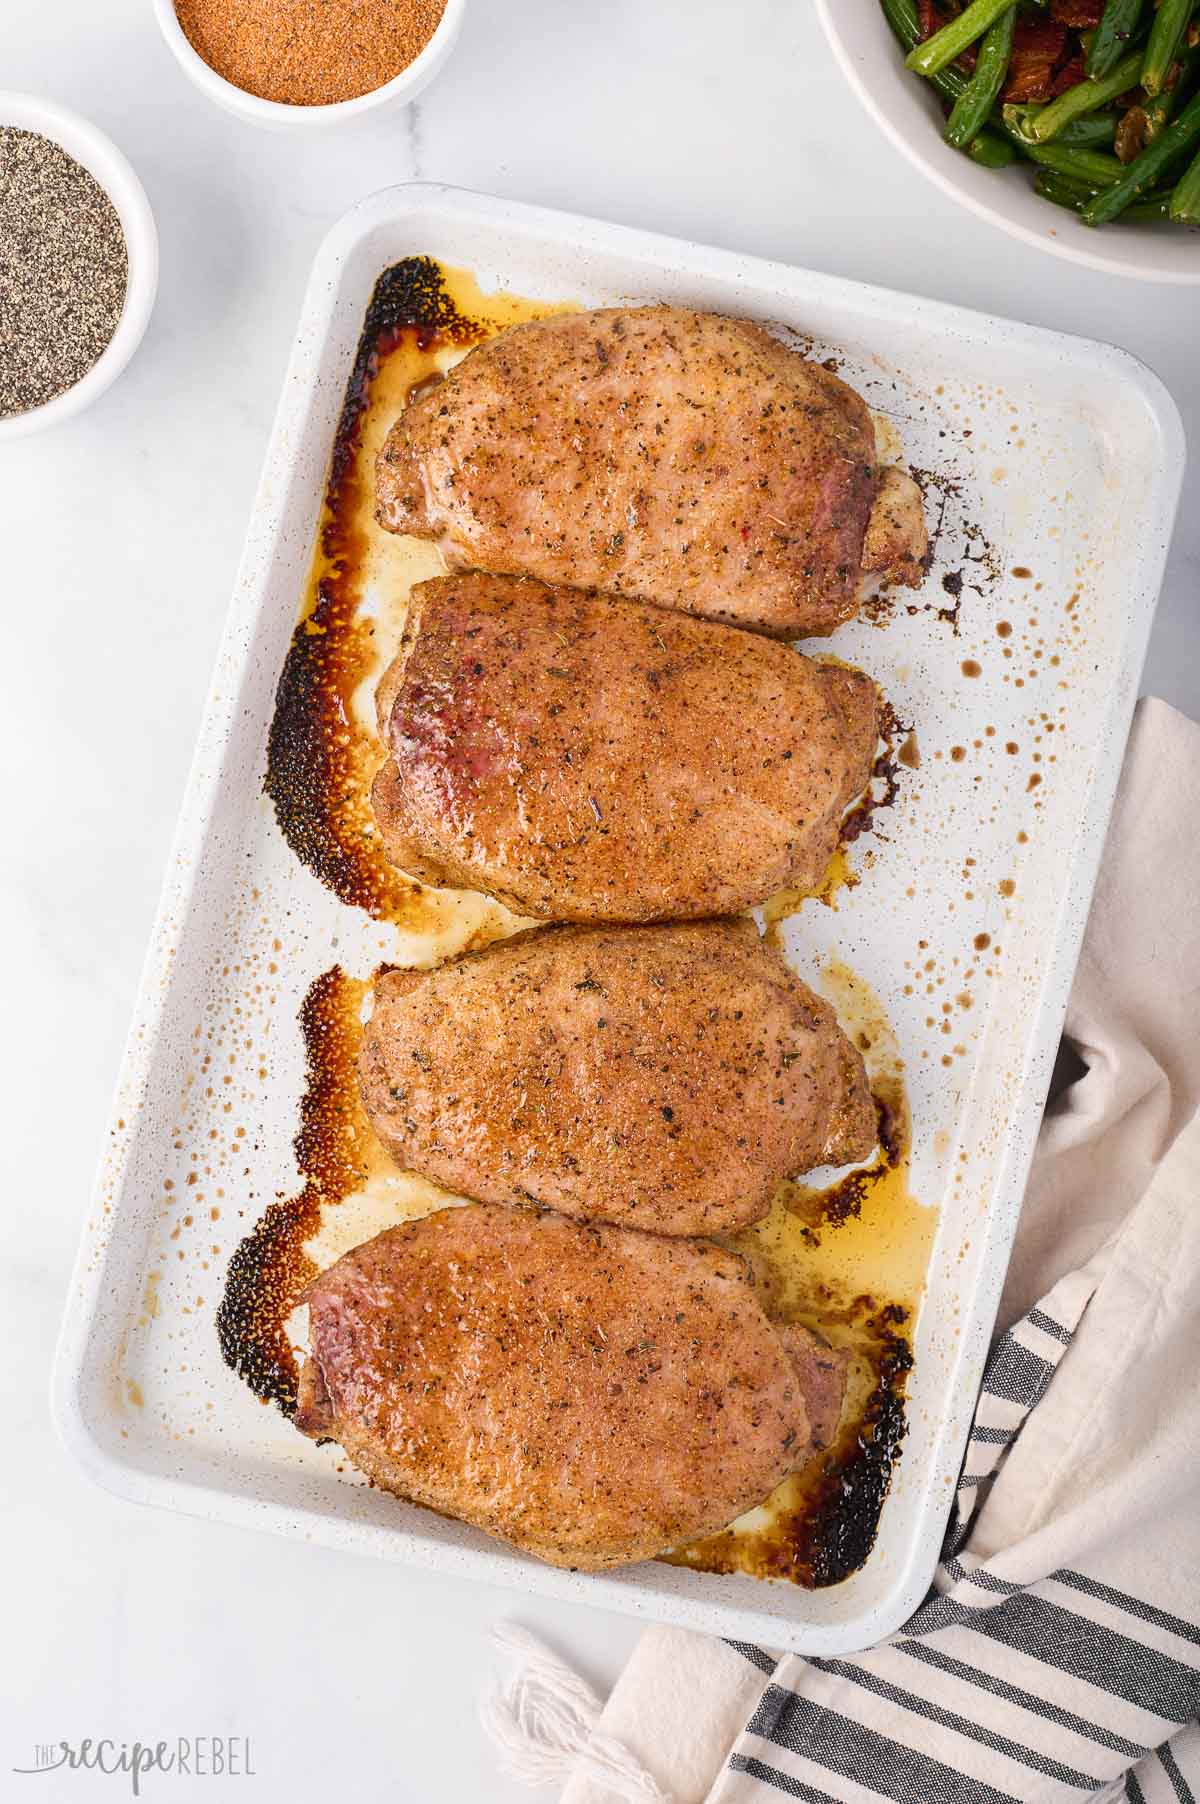 Oven Snooze Verwaand Baked Pork Chops - The Recipe Rebel